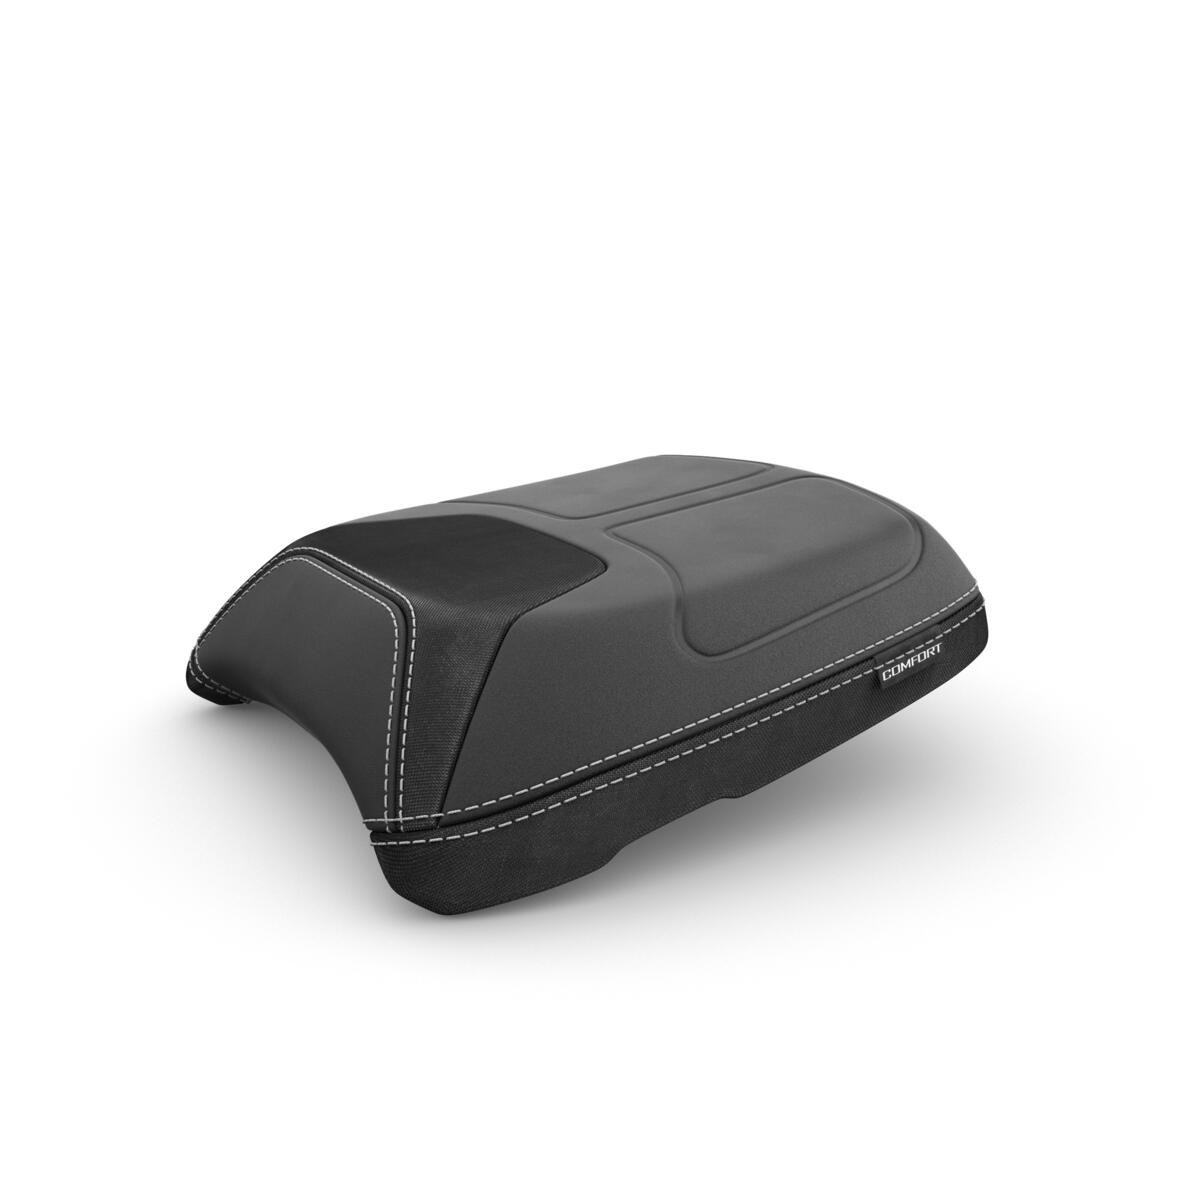 Echipamentul de călătorie suprem pentru ca TRACER 9 să pornească la drum într-un stil complet funcțional. Parbrizul înalt, mânerele încălzite și șaua confortabilă încălzită oferă confort suplimentar pentru drumurile lungi și nesfârșite. În cazul în care ai nevoie de și mai multă protecție împotriva vântului, pachetul Travel Pro include parbrizul adițional pentru a spori confortul. Cutiile de bagaje laterale și cutia de bagaje superioară oferă instrumentele perfecte pentru a lua lucrurile personale cu tine în călătorii. Încarcă-ți telefonul sau GPS-ul cu ușurință cu încărcătorul USB, în timp ce ești atent la presiunea anvelopelor, cu ajutorul instrumentului de monitorizare a presiunii din pneuri. De asemenea, pachetul conține un dispozitiv GPS dedicat, care te ajută să prinzi GPS-ul în siguranță. Prelungirea cricului lateral oferă motocicletei mai multă stabilitate pe orice suprafață atunci când este parcată, apărătoarea de radiator îți protejează radiatorul împotriva pietrelor și pietrișului de pe traseu, în timp ce apărătoarea de motor oferă protecție împotriva căderii neintenționate. Farurile de ceață cu LED cresc vizibilitatea în condiții meteorologice nefavorabile, pentru siguranță optimă. În timp ce te bucuri de călătorie, ne-am asigurat că pasagerul tău este, de asemenea, răsfățat. Acesta se va bucura de confortul scaunului și spătarului pasagerului.